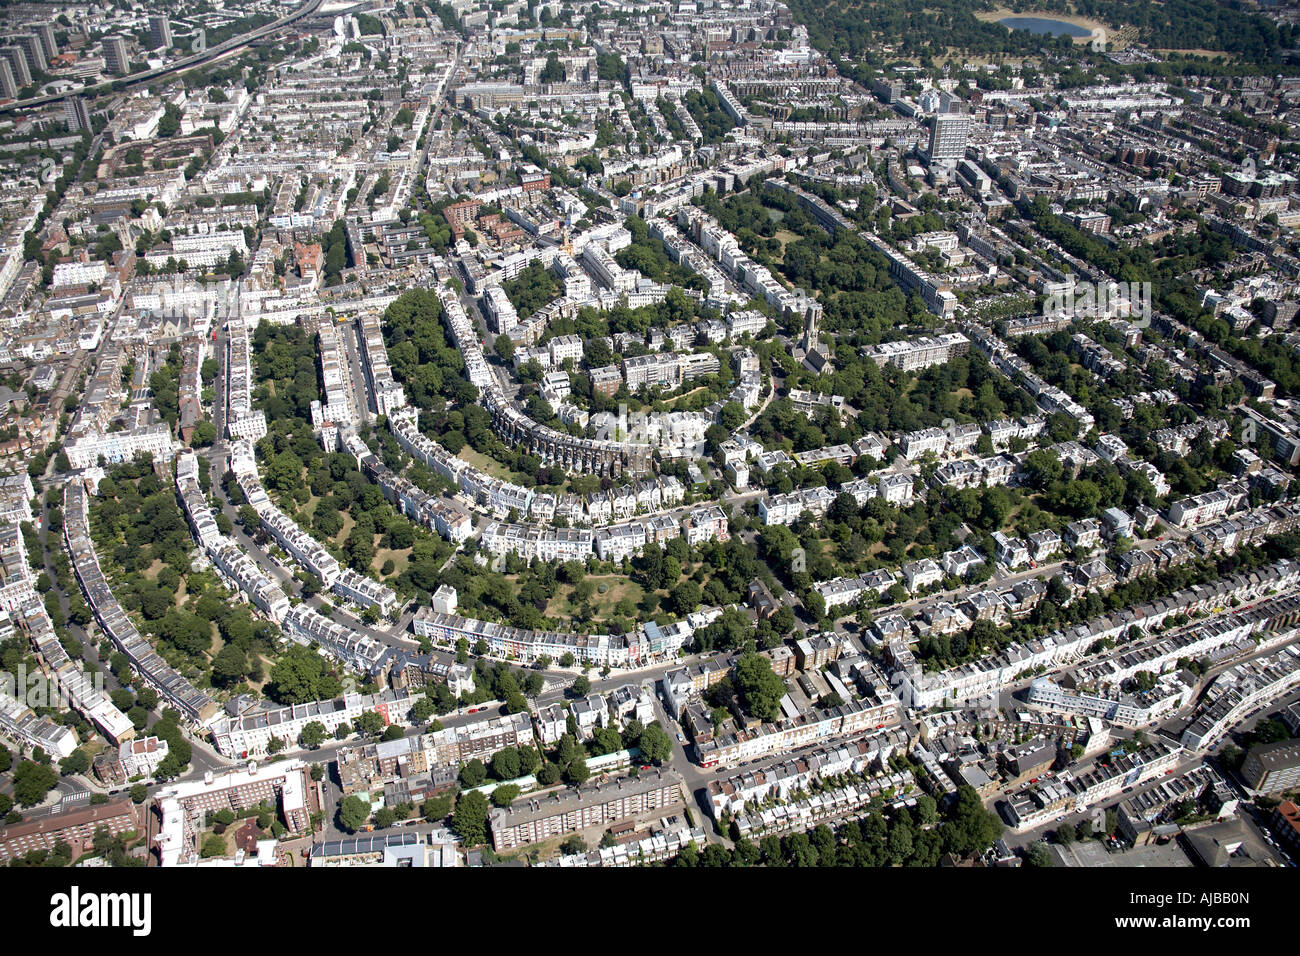 Vue aérienne de l'habitat pavillonnaire de Ladbroke Grove Londres W11 Nottinghill England UK oblique de haut niveau Banque D'Images